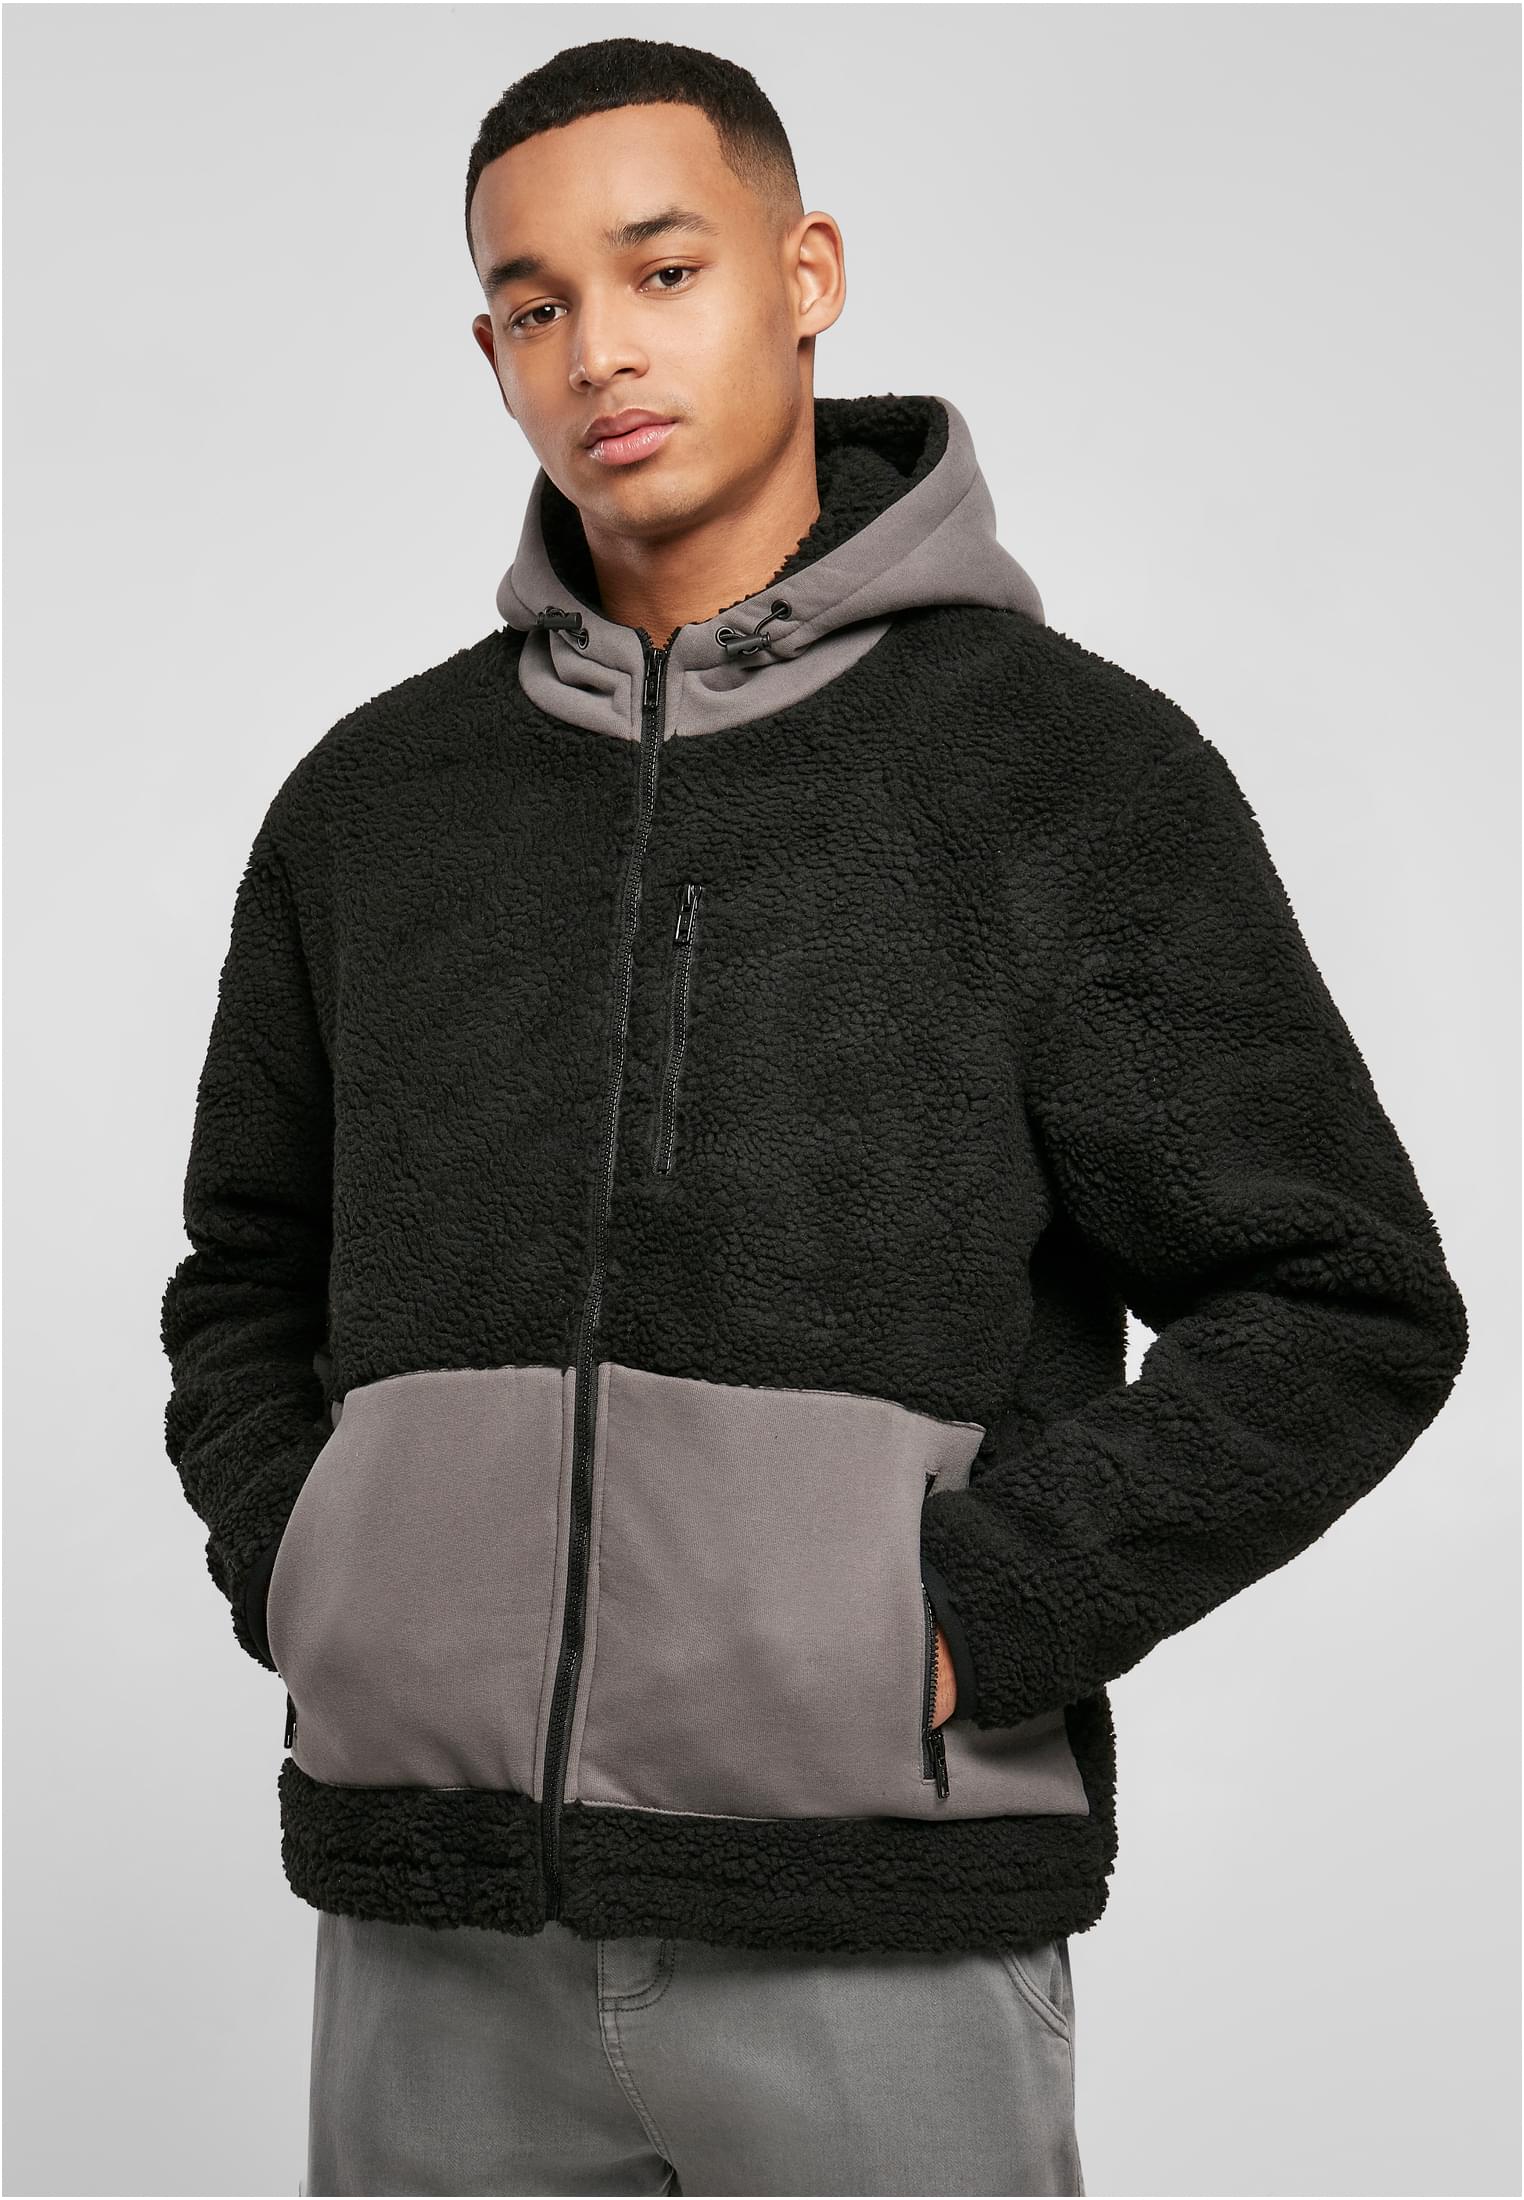 Sherpa hooded jacket black/asphalt